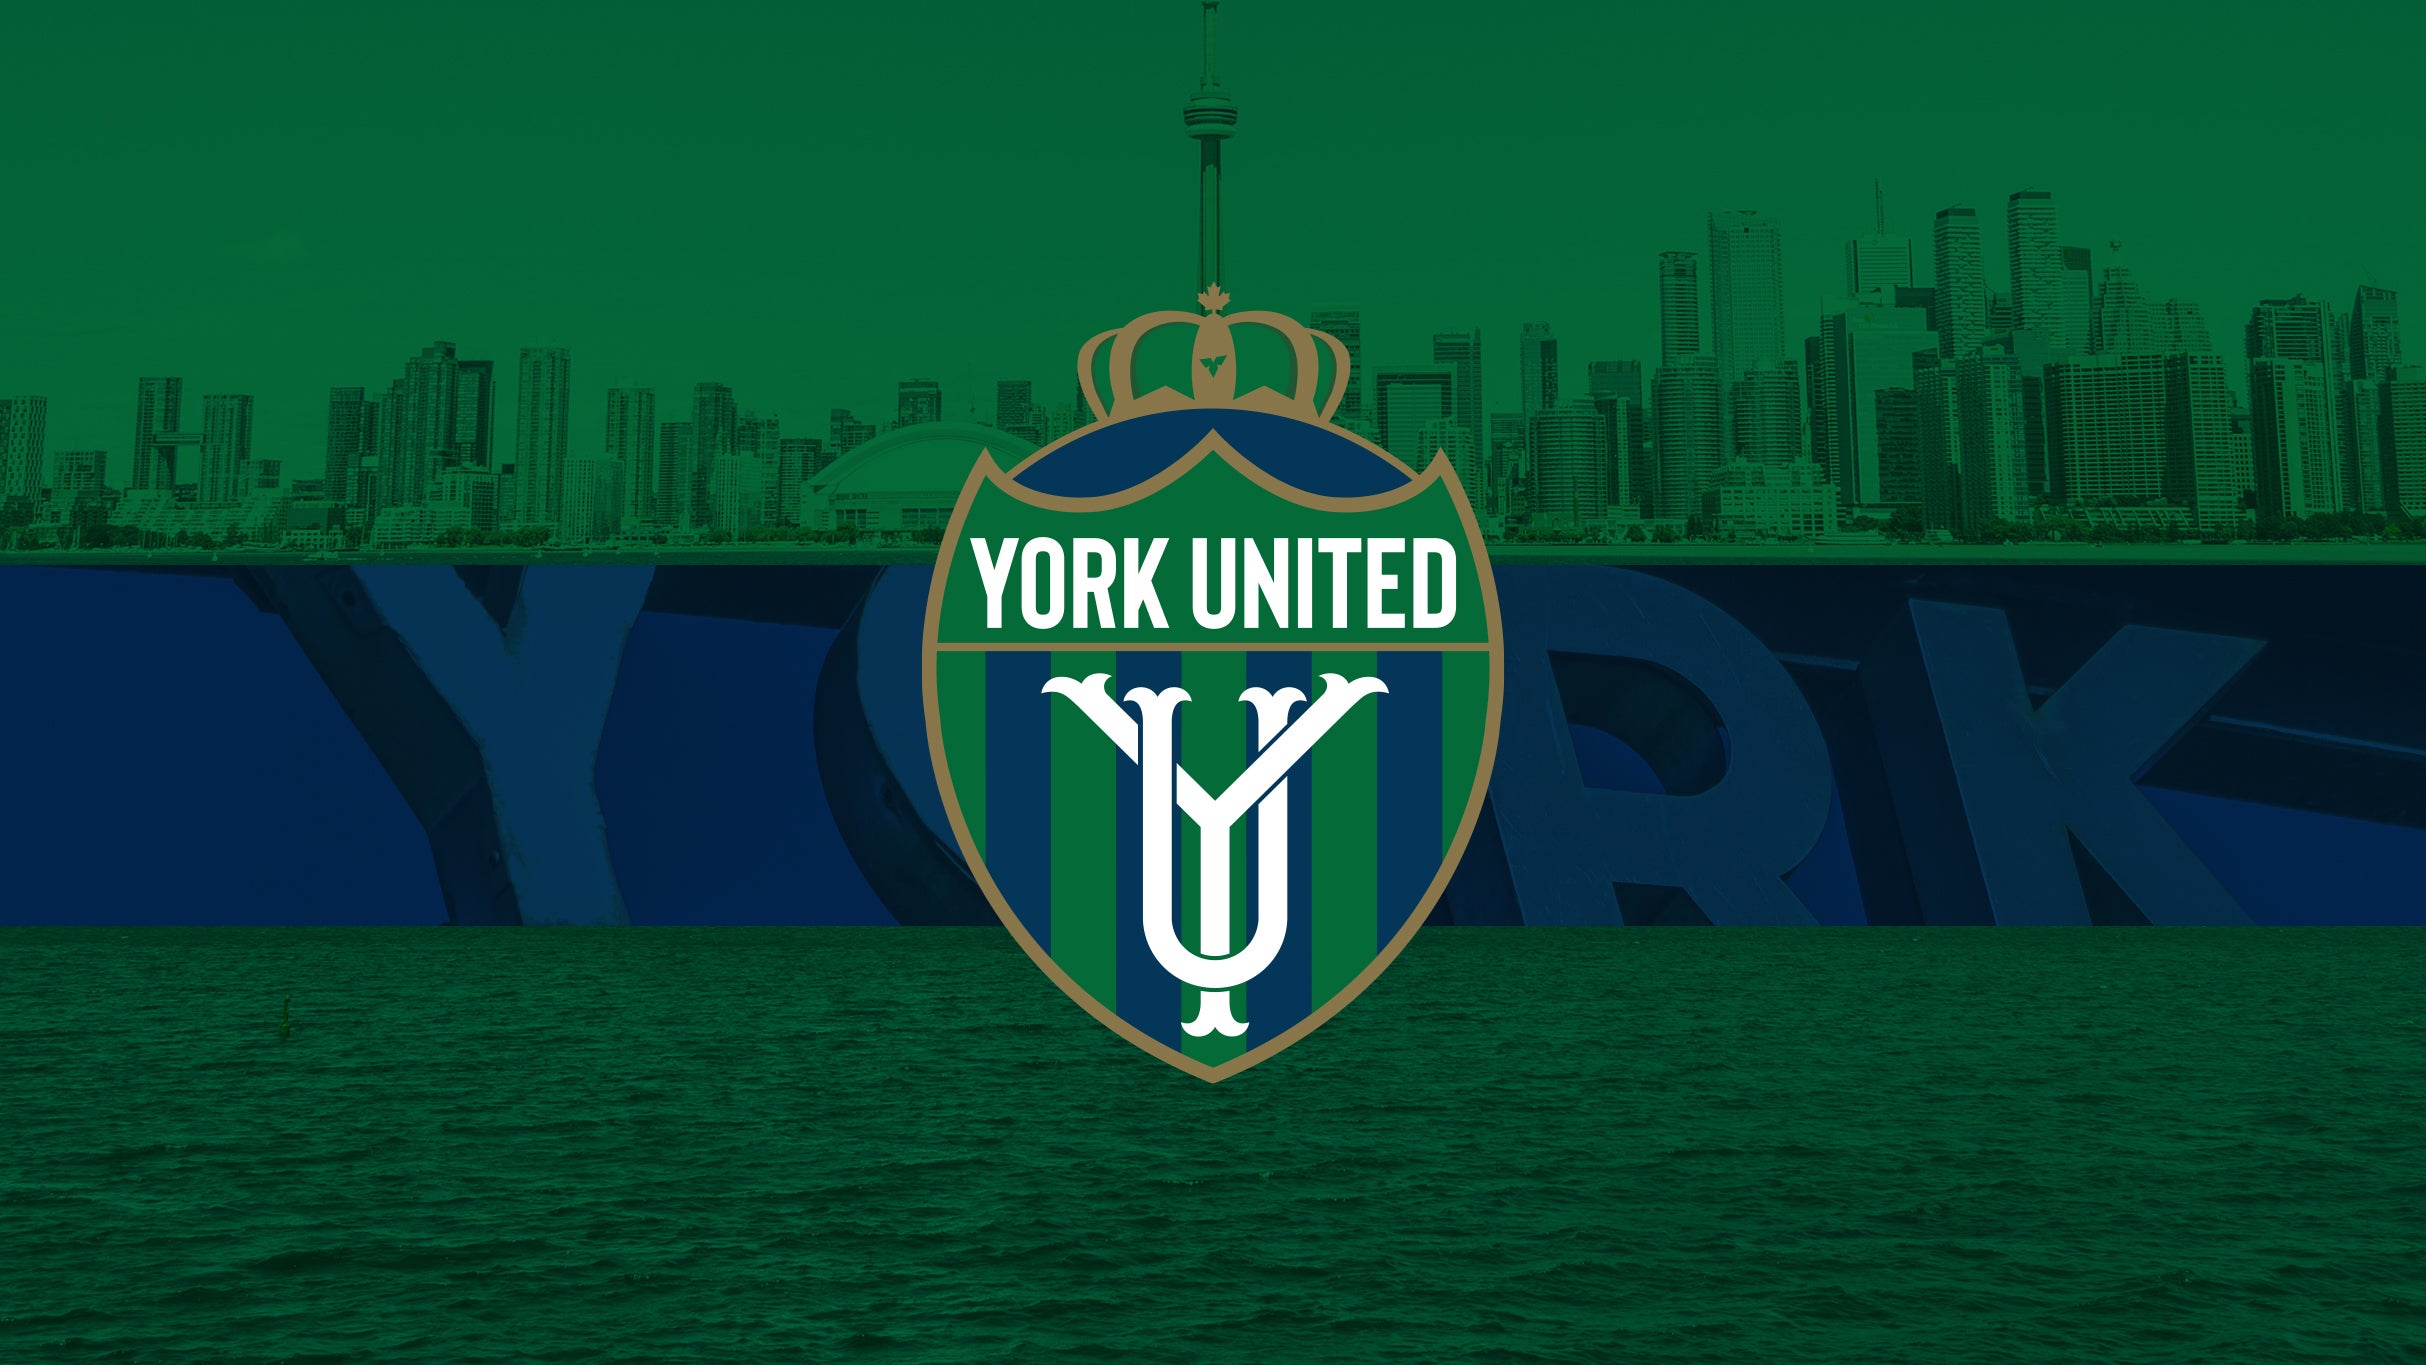 York United FC vs. Atlético Ottawa presales in Toronto